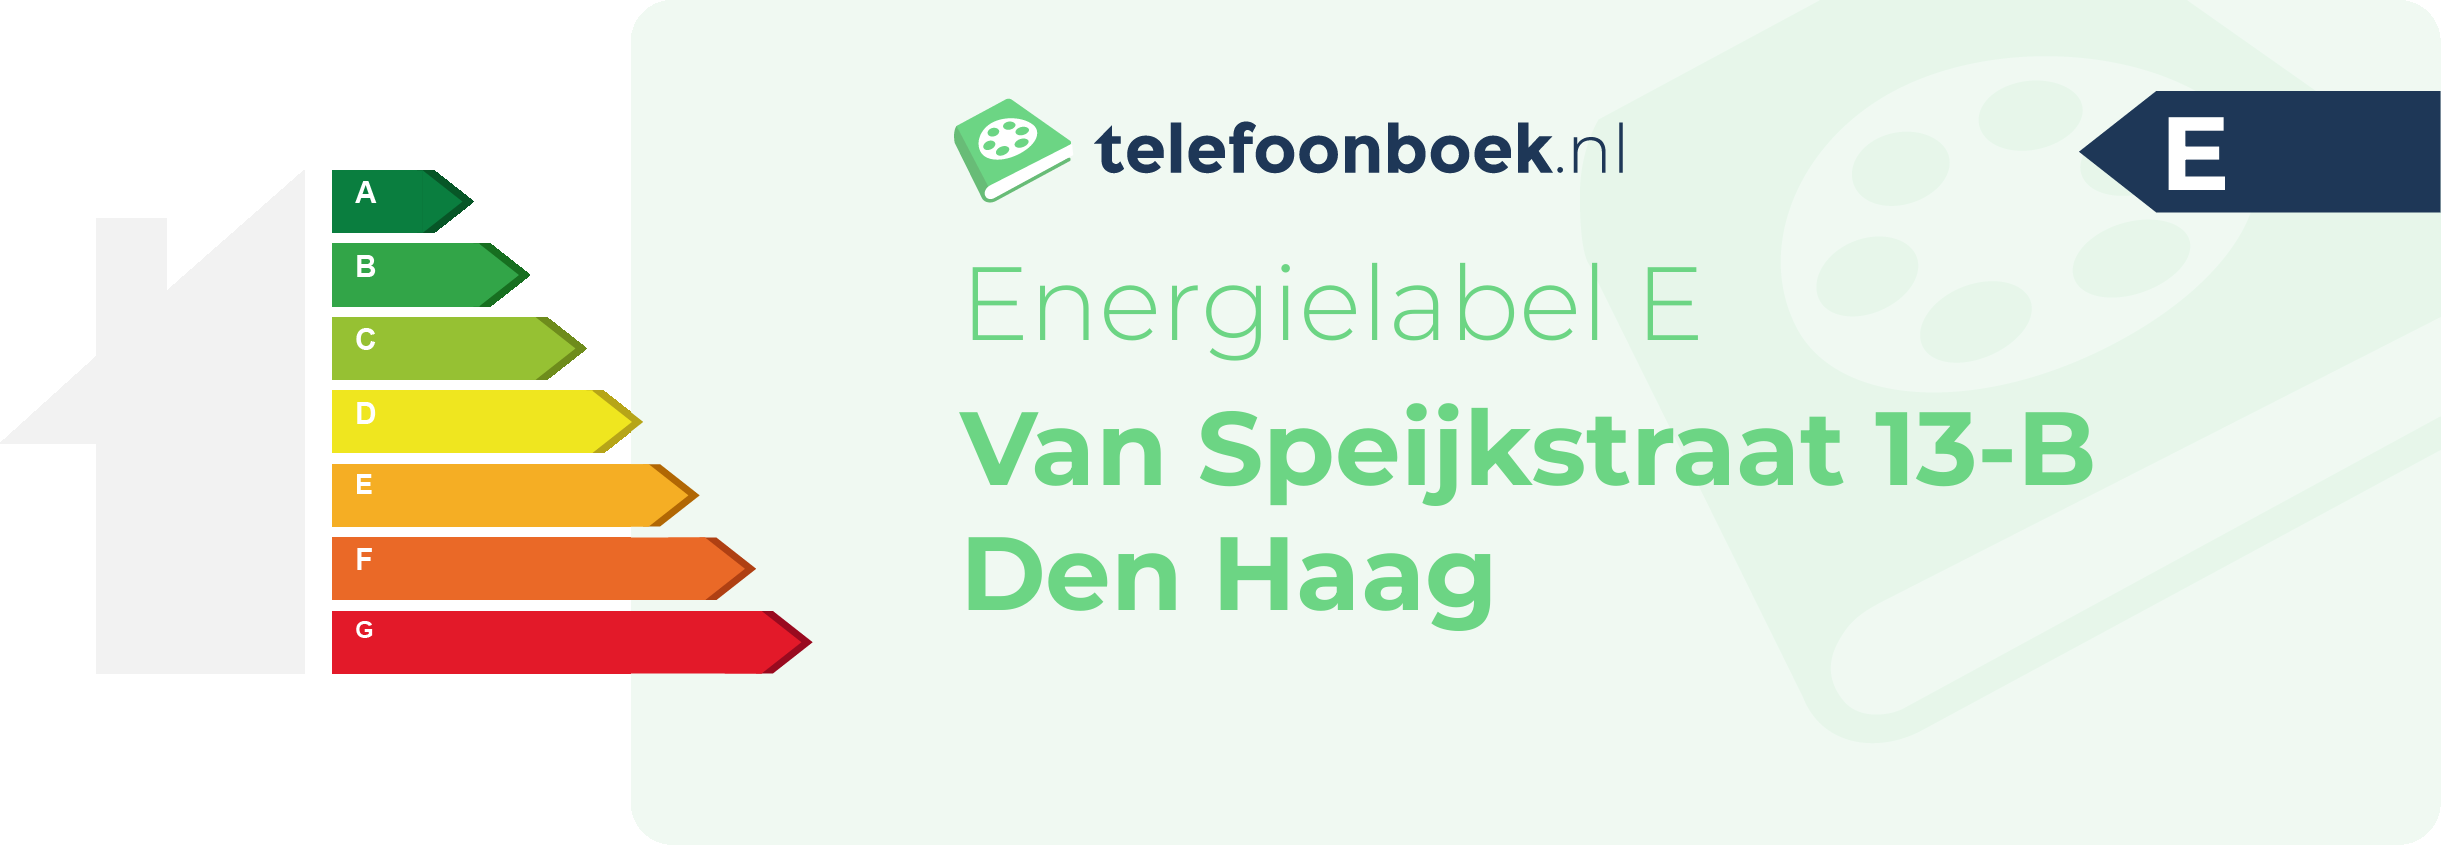 Energielabel Van Speijkstraat 13-B Den Haag